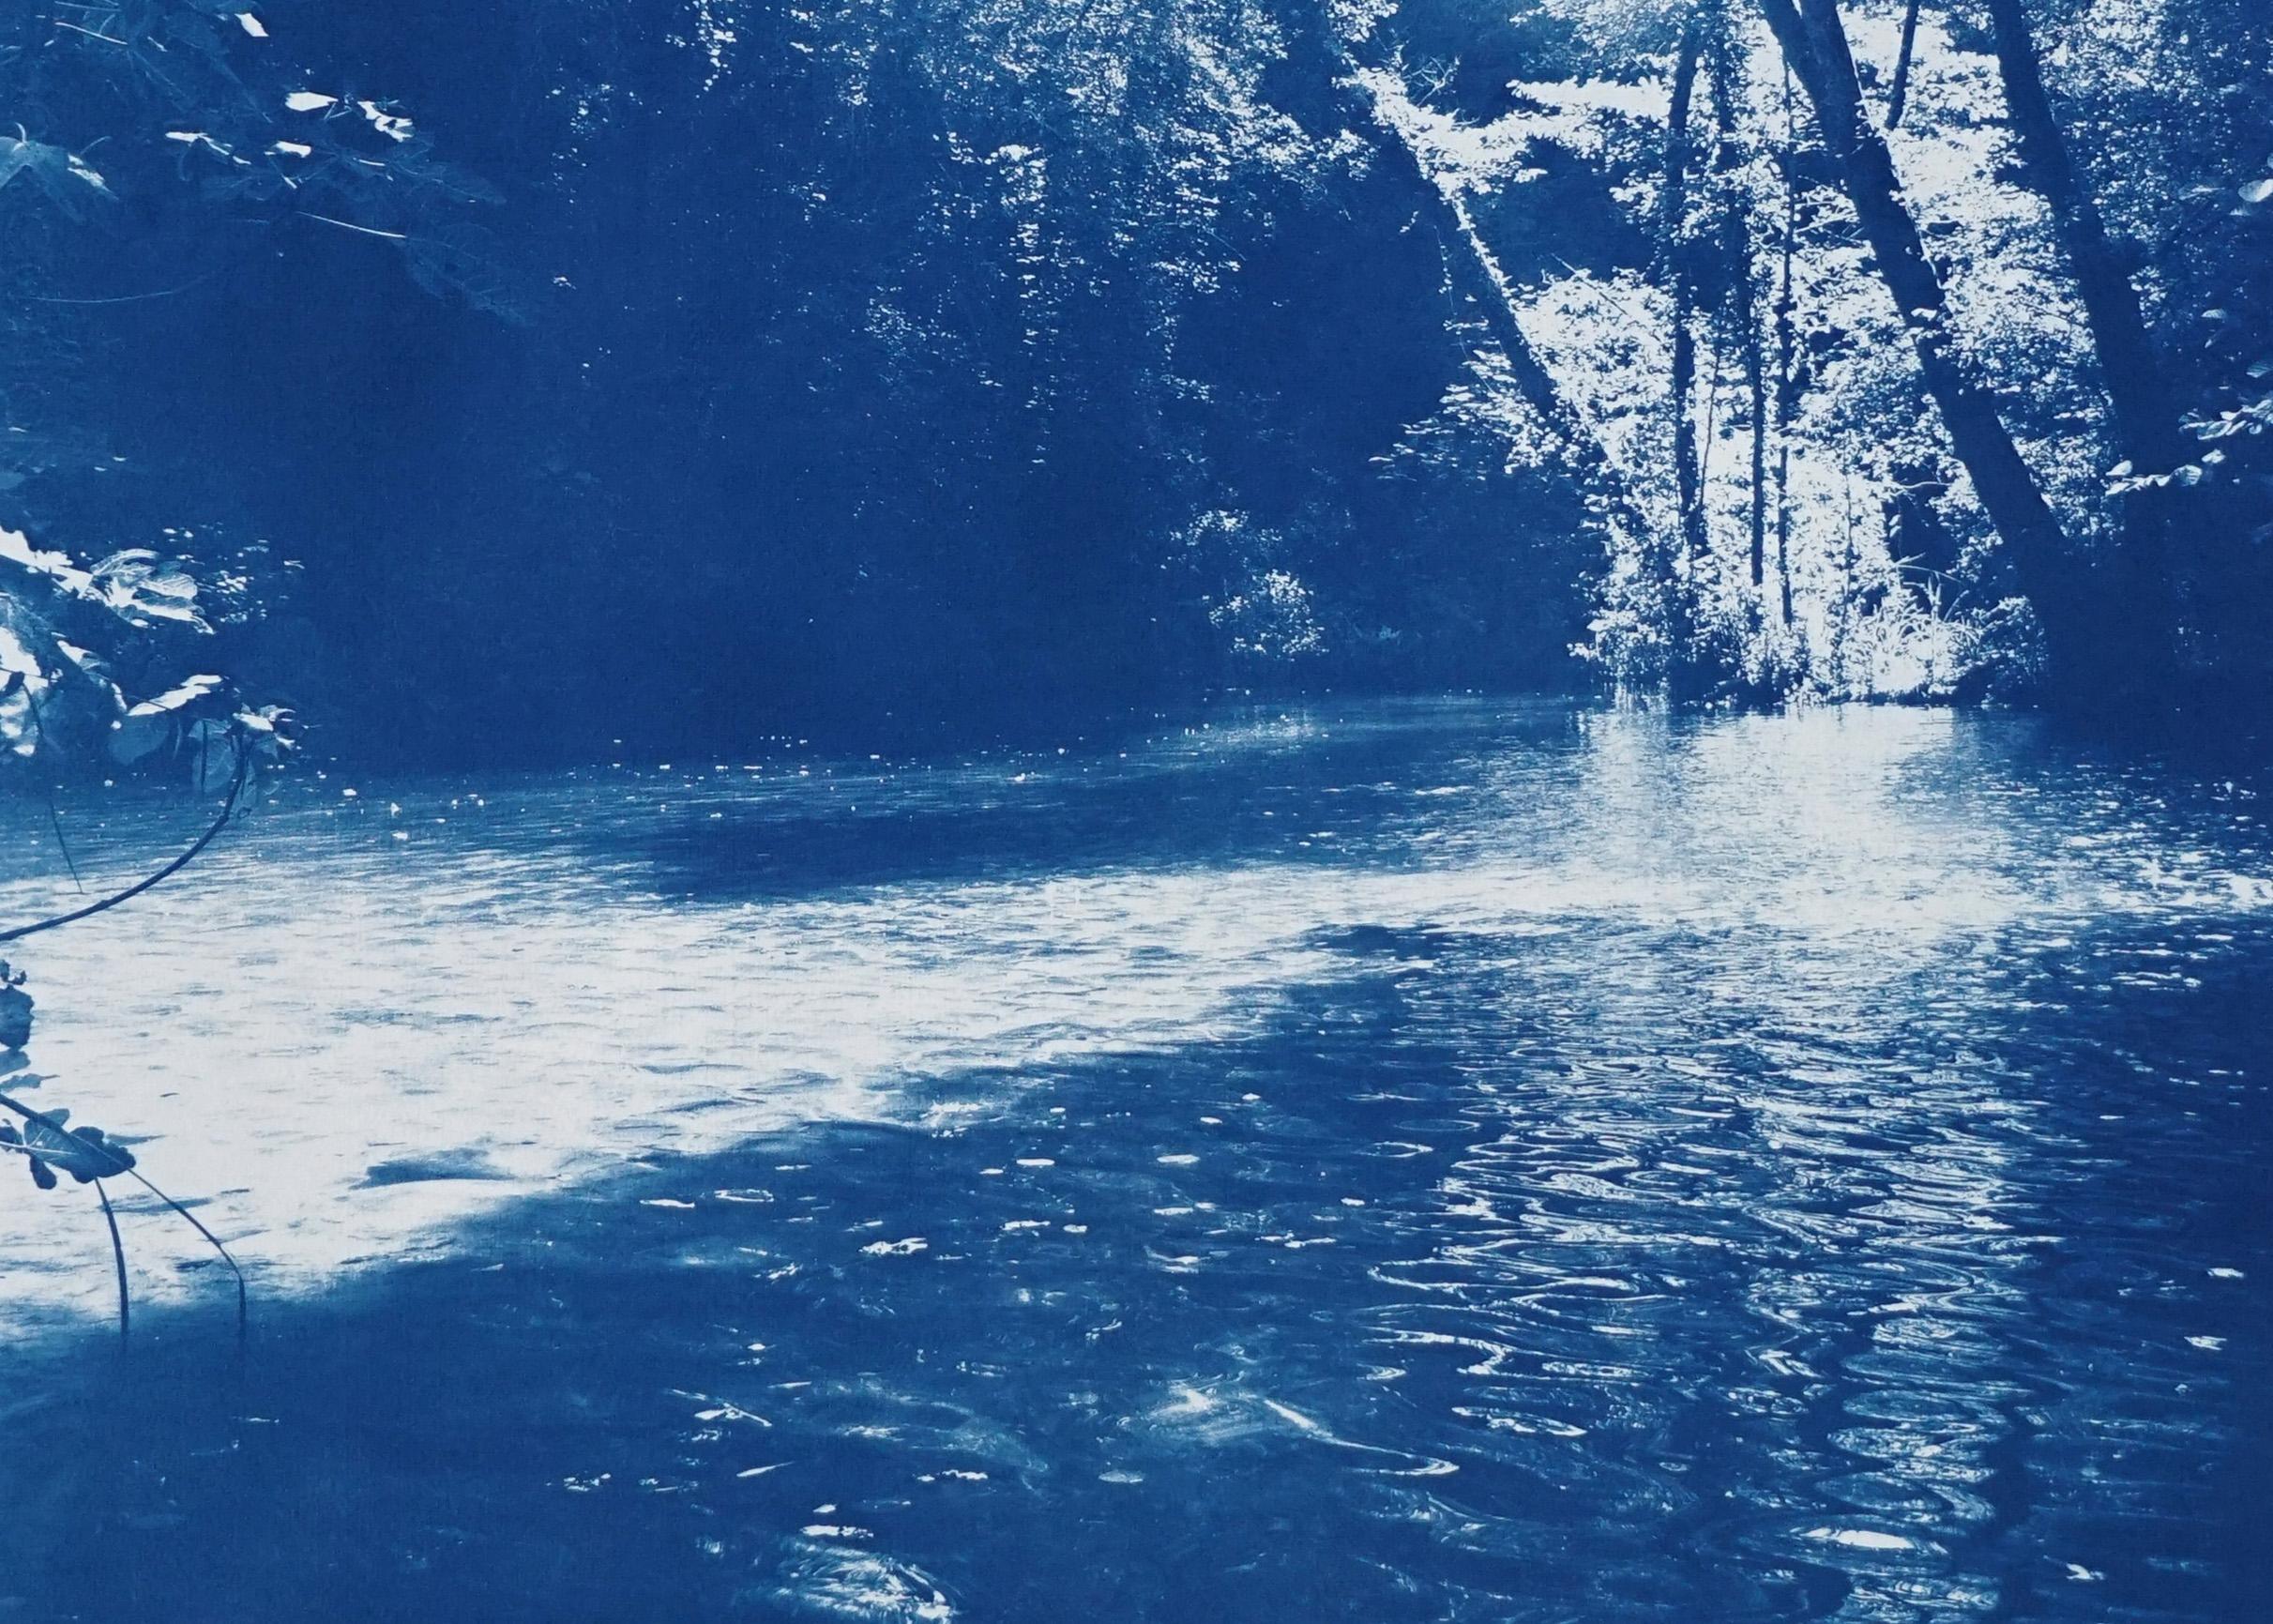 Il s'agit d'un cyanotype exclusif imprimé à la main en édition limitée.
Jolie scène d'un étang caché dans une forêt scandinave.  

Détails :
+ Titre : Forêt enchantée scandinave
+ Année : 2022
+ Taille de l'édition : 50
+ Tampon et certificat